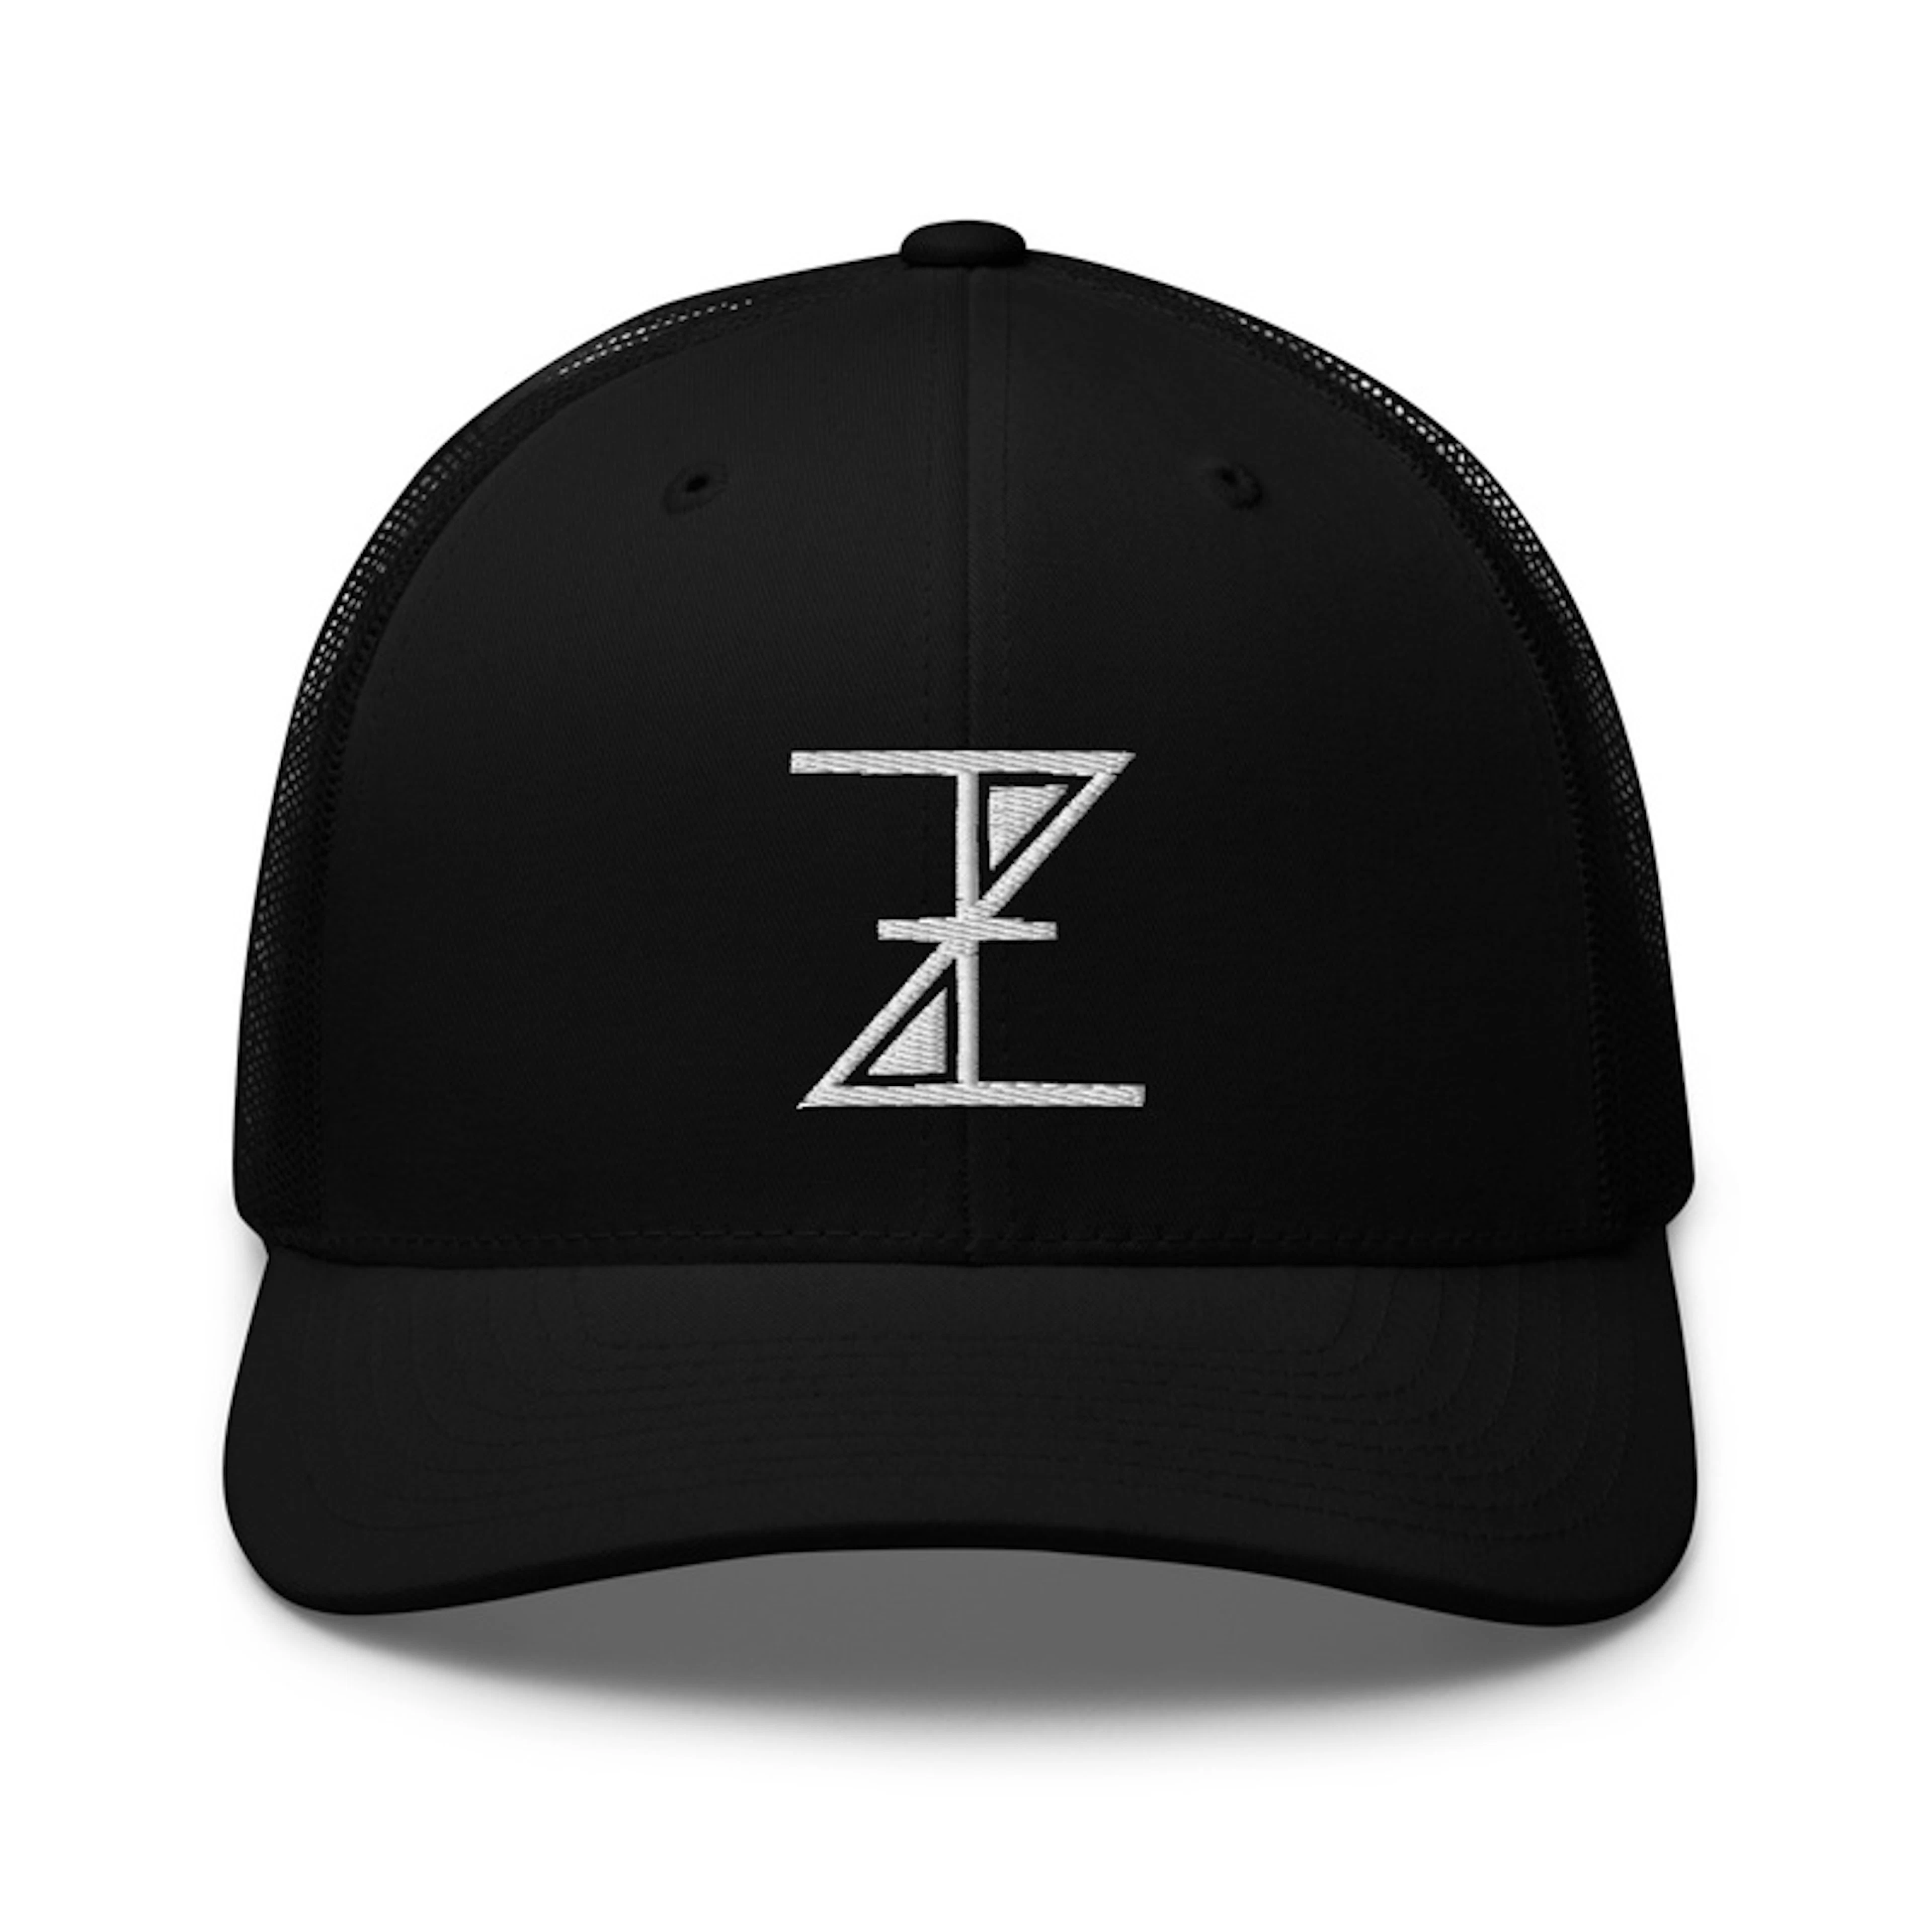 "ITZ" Trucker Hat